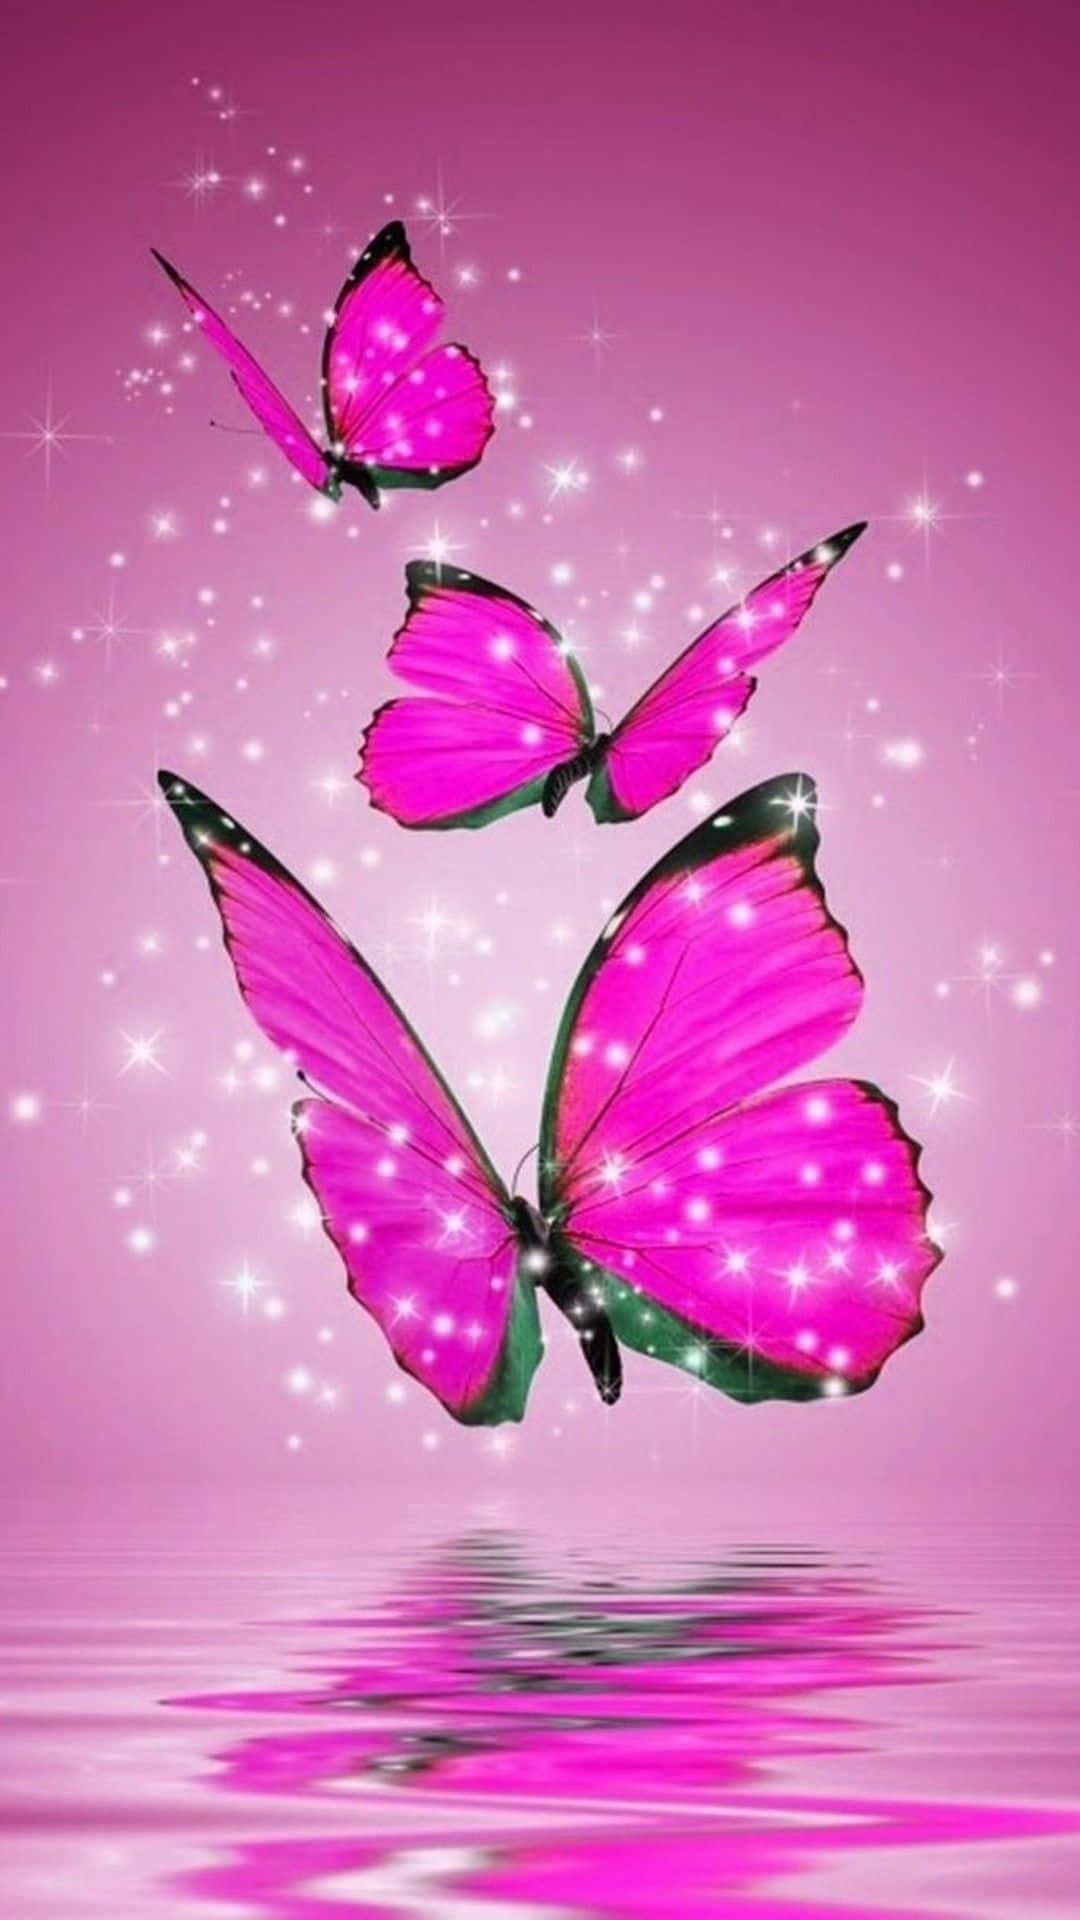 Картинка на заставку телефона для девочки. Розовые бабочки. Красивые темы на телефон. Живые бабочки. Красивые розовые бабочки.